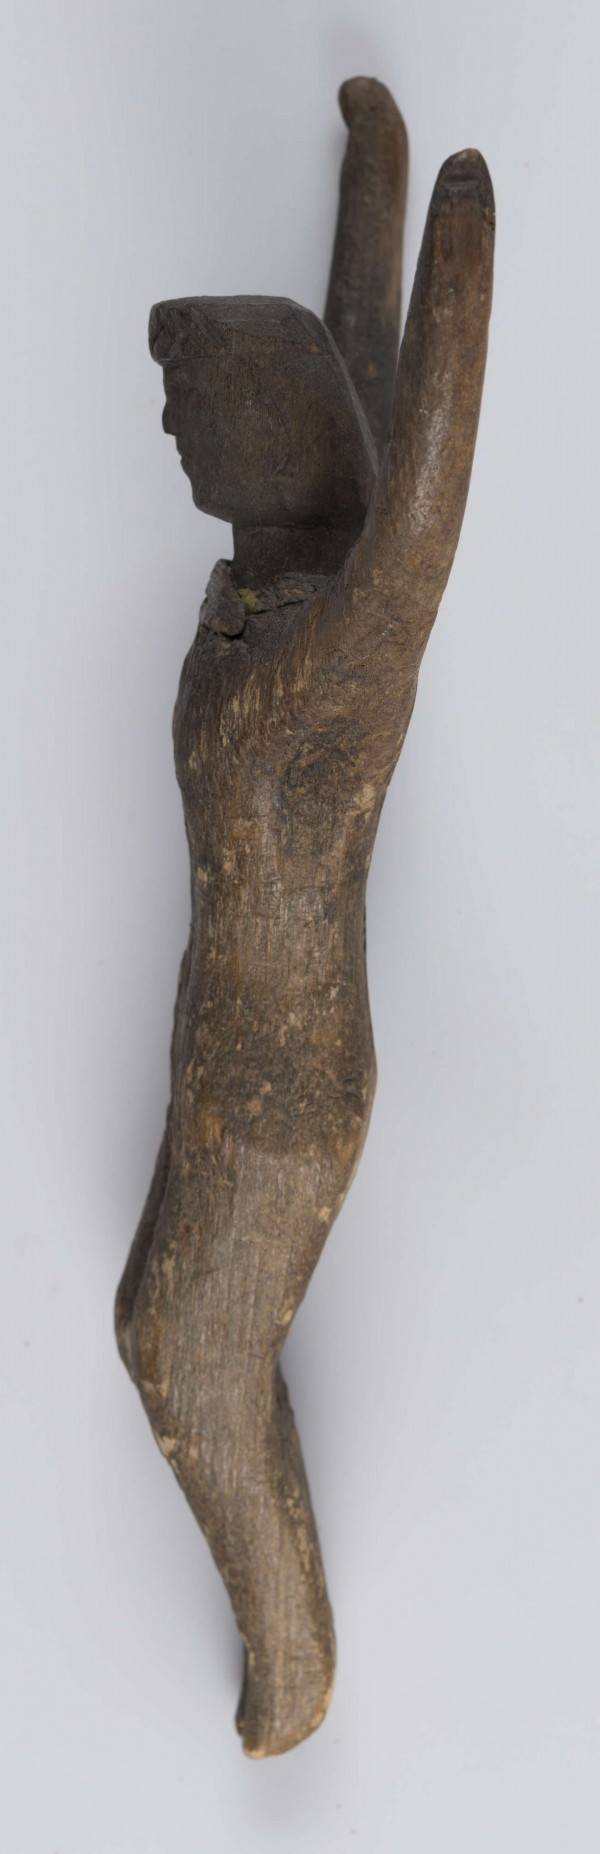 E/5175/ML - Rzeźba drewniana przedstawiająca Chrystusa Ukrzyżowanego. Głowa lekko pochylona. Twarz potraktowana schematycznie. Korona cierniowa w postaci opaski zdobionej rytem ukośnych rombów. Ręce łukowato wygięte ku górze, słabo zaznaczona klatka piersiowa, biodra silnie wystające, nogi lekko zgięte w kolanach, stopy słabo zaznaczone. Drewno prawdopodobnie lipowe. Figurka pęknięta wzdłuż. Brak krzyża.